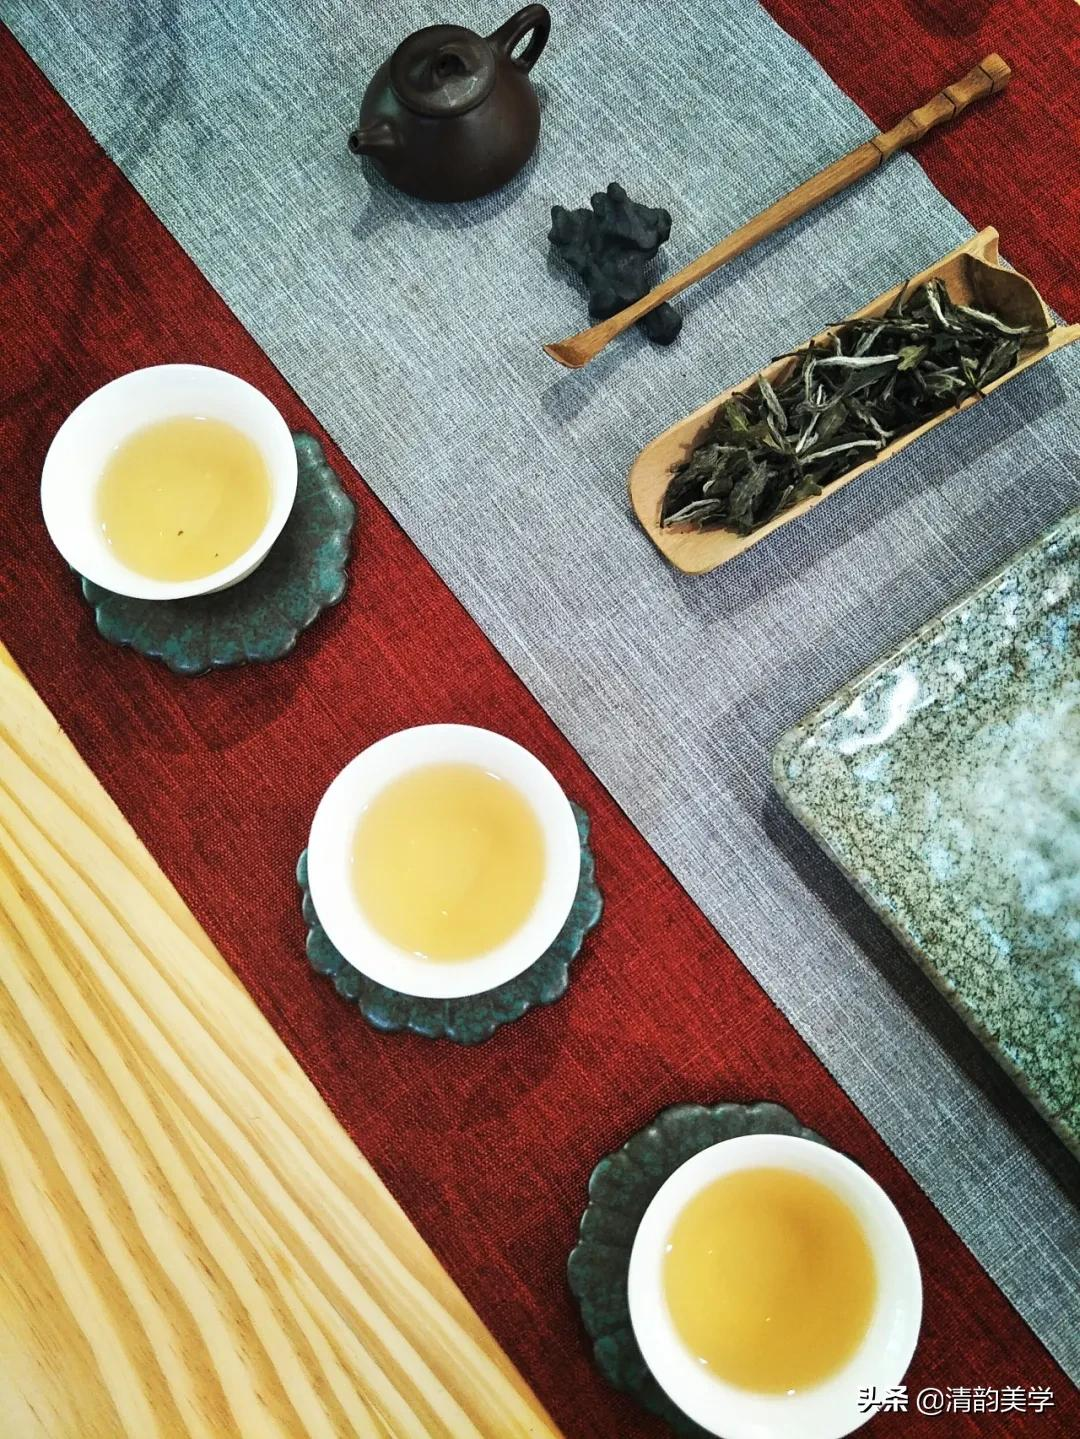 茶，是“琴棋书画诗酒茶”的那杯茶